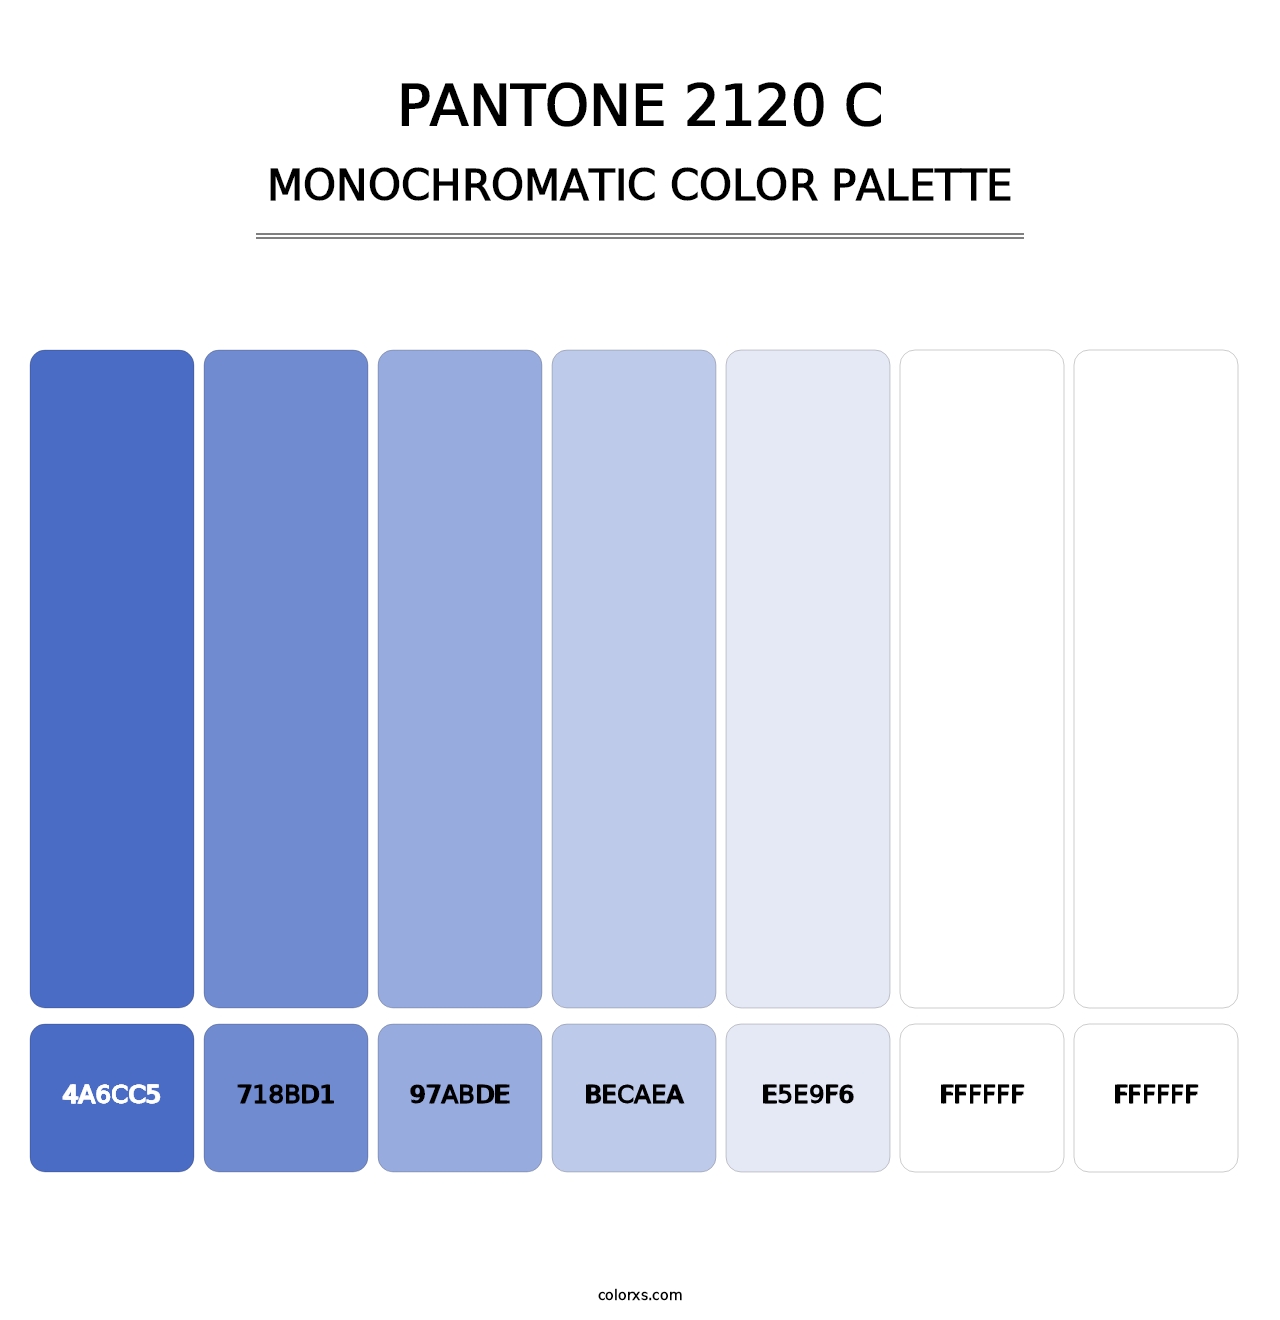 PANTONE 2120 C - Monochromatic Color Palette